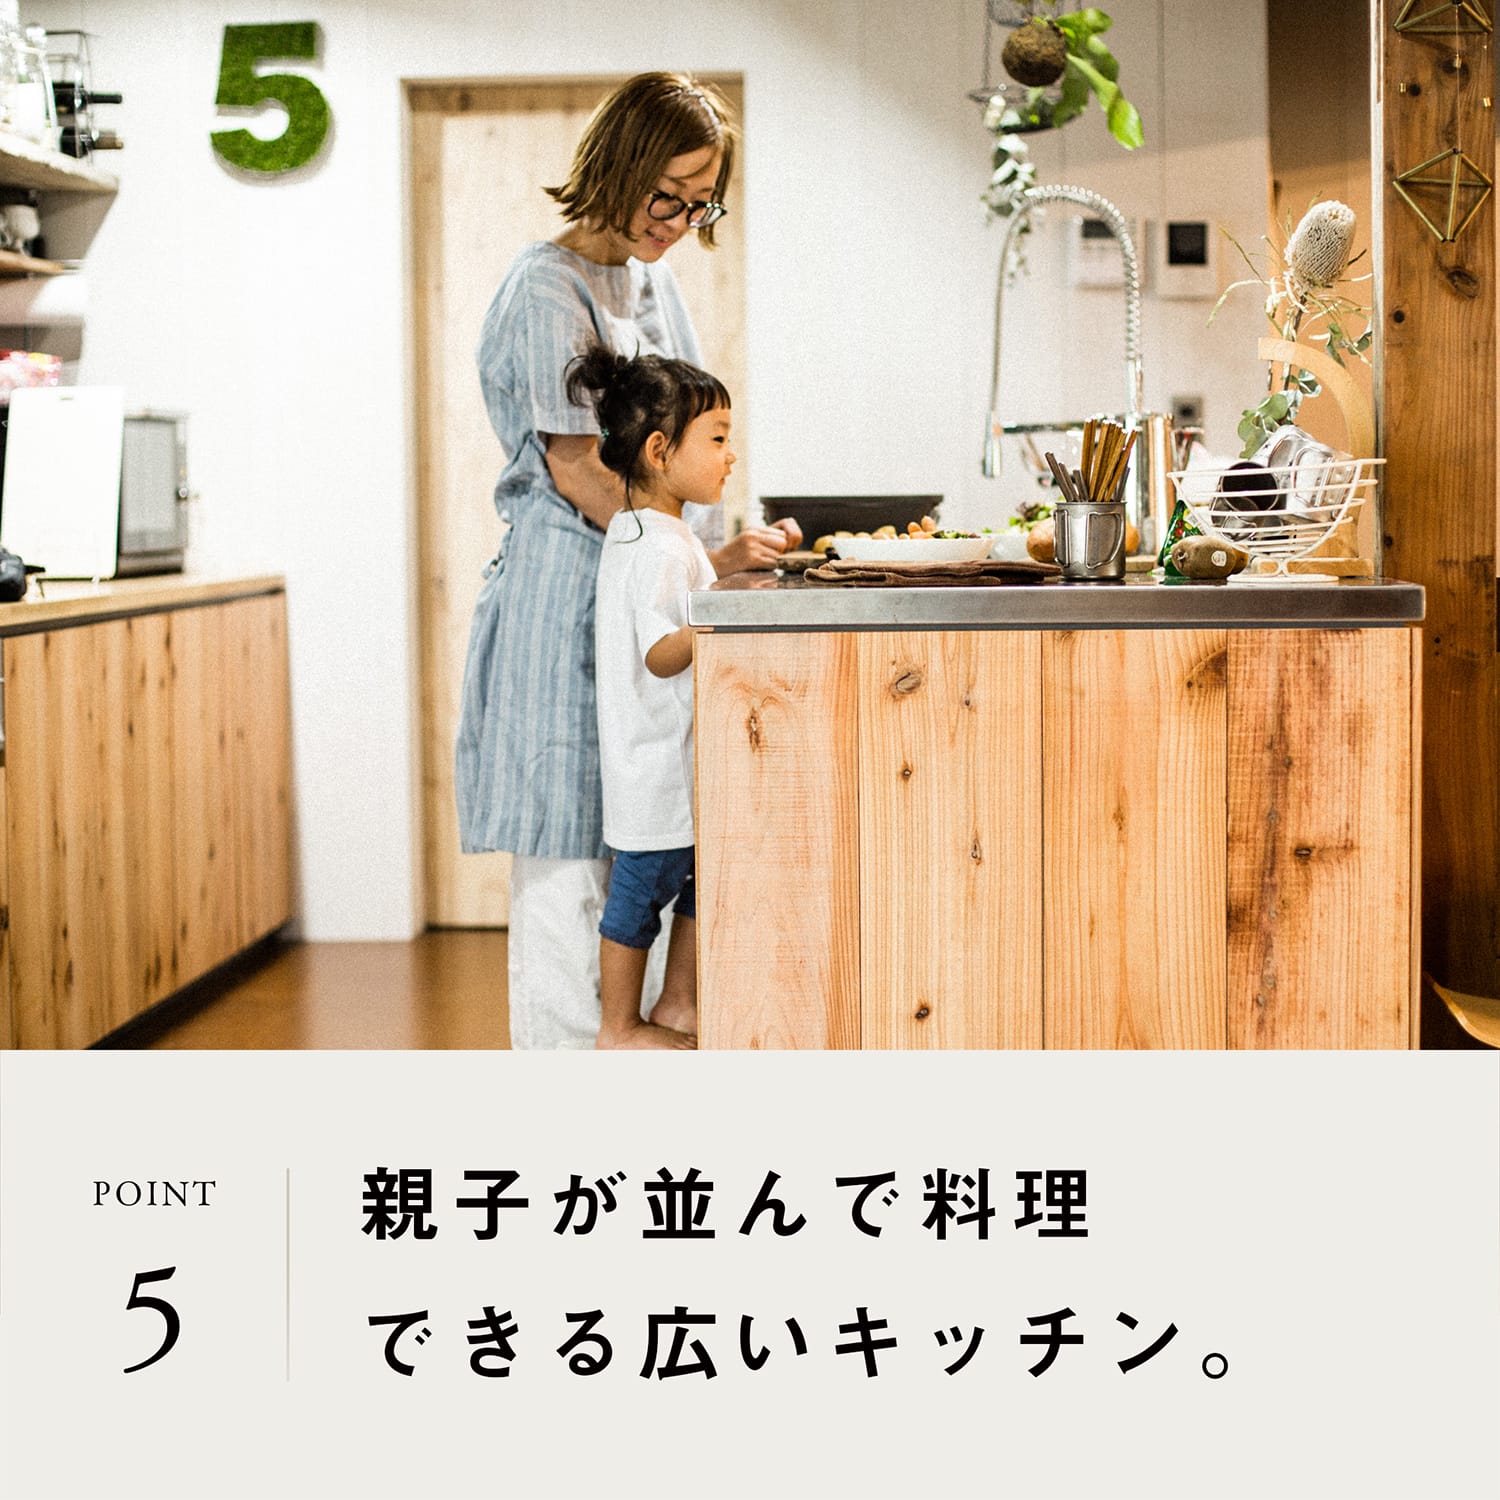 POINT 5 | 親子で並んで料理できる広いキッチン。